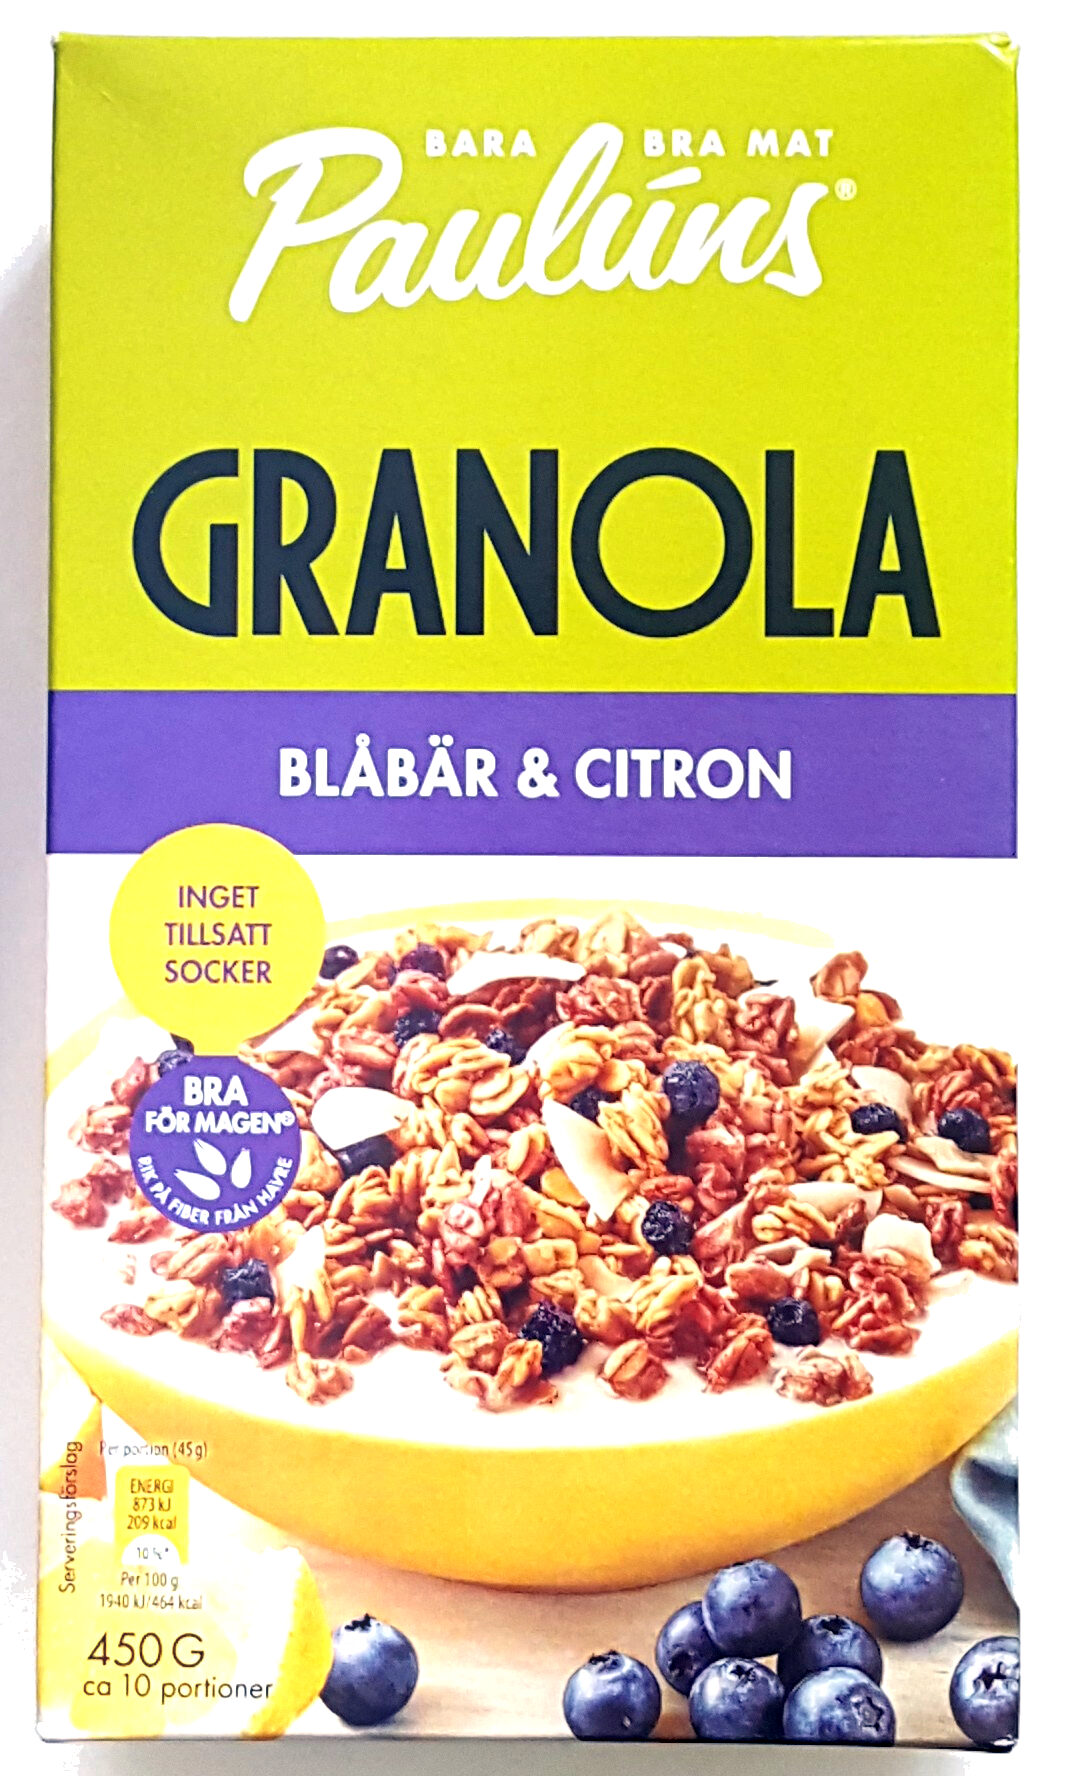 Granola - Blåbär & Citron - Produkt - sv